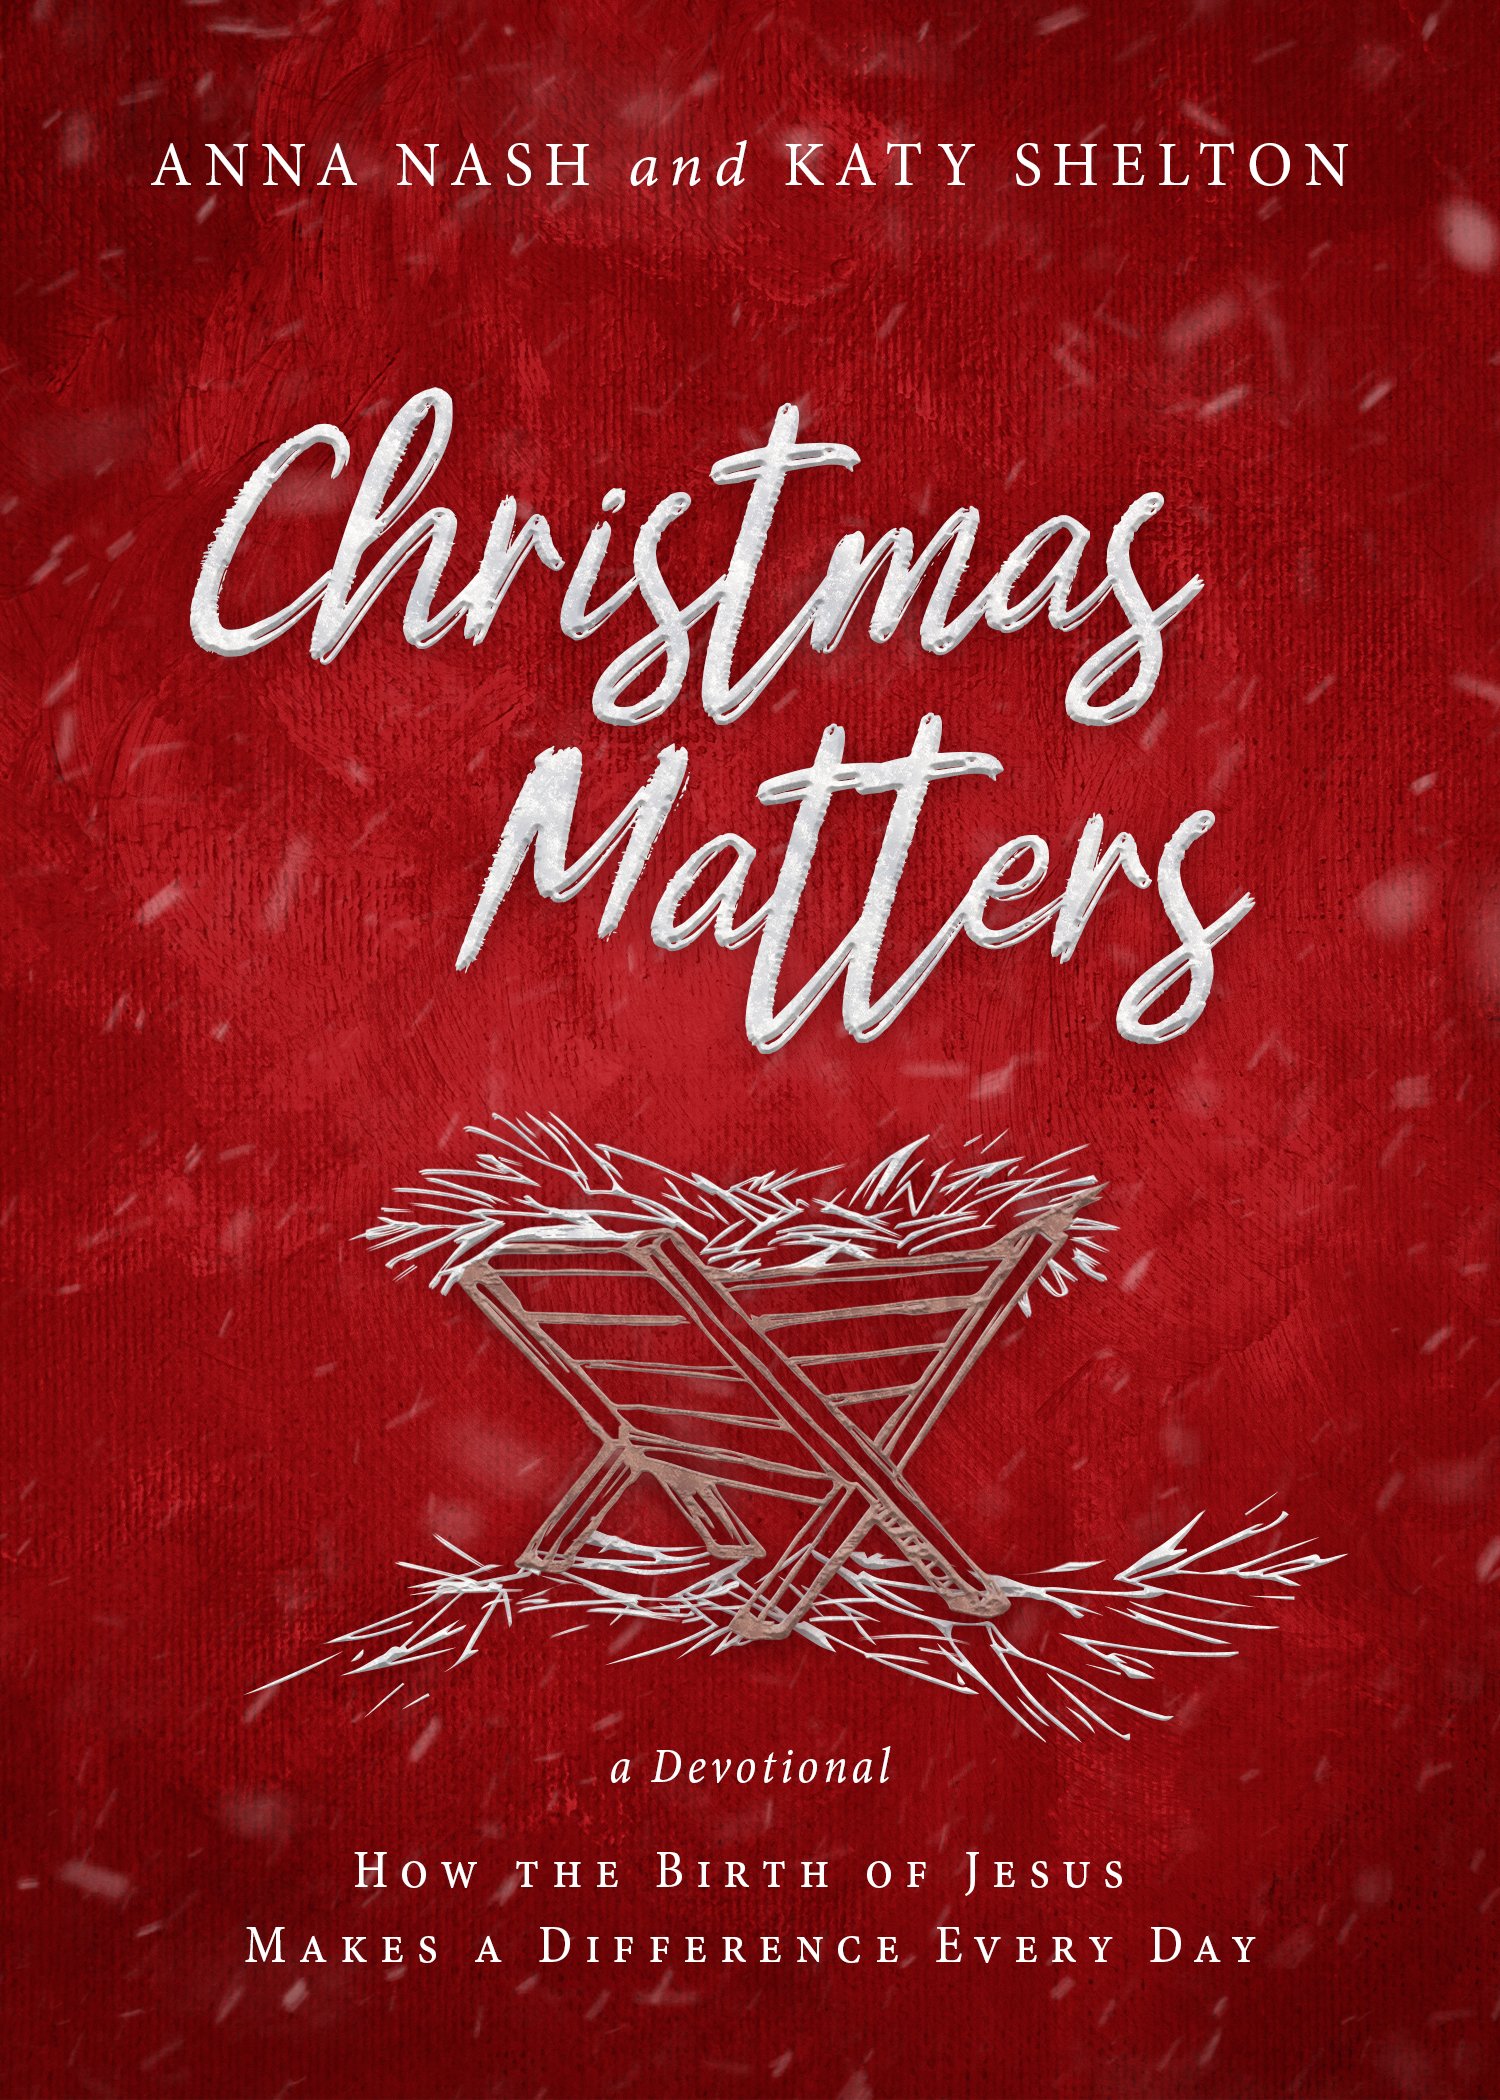 ChristmasMatters_300dpi_RGB.jpg